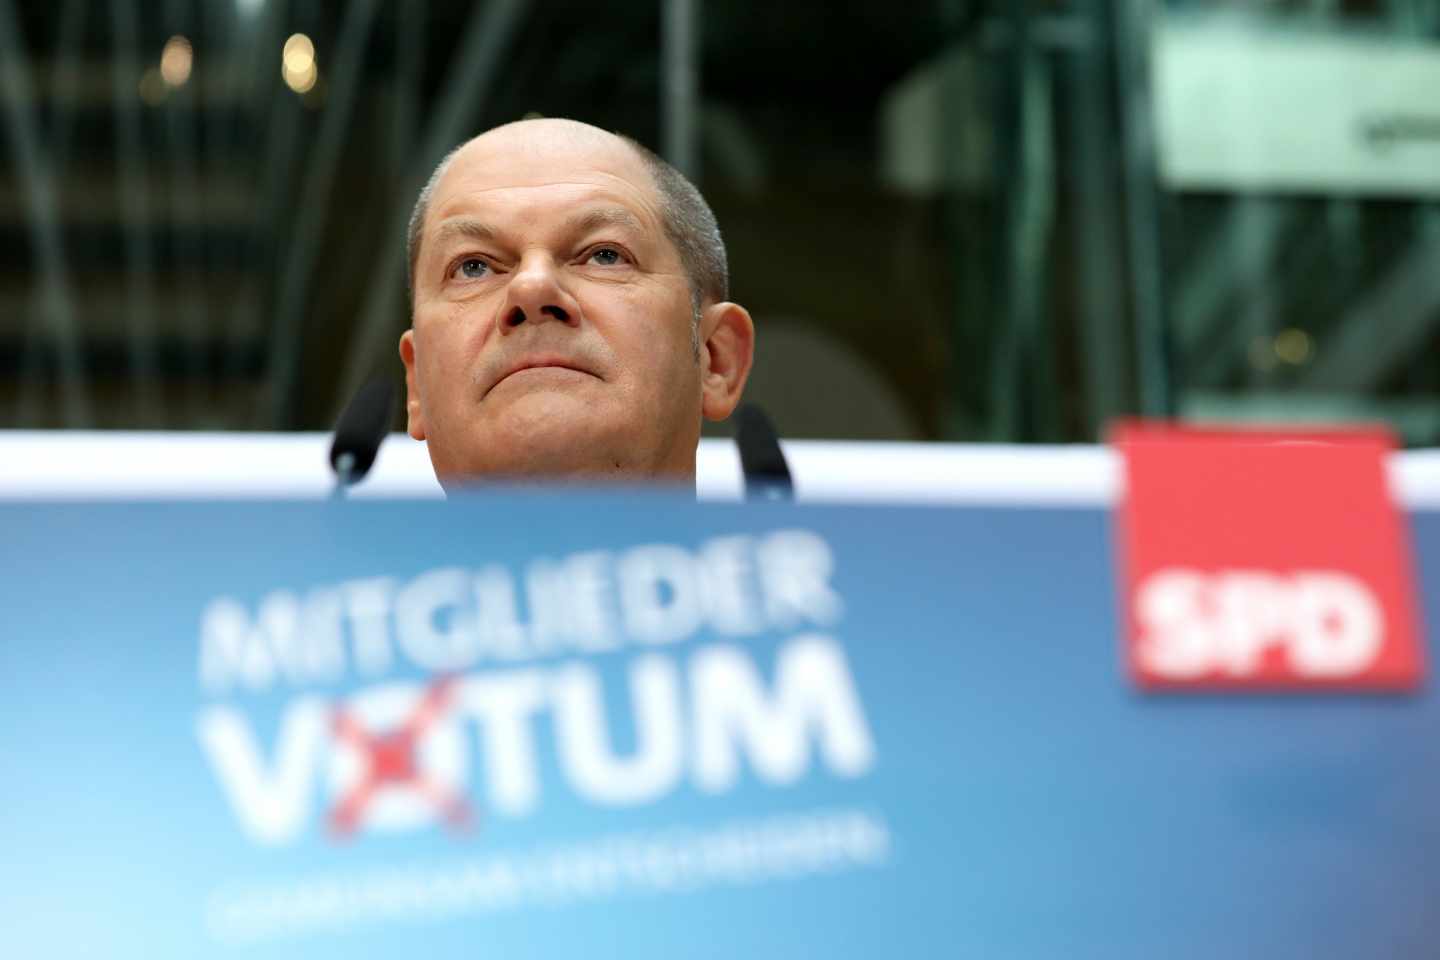 Olaf Scholz anuncia los resultados de la consulta a la militancia del SPD sobre la gran coalición en Alemania.